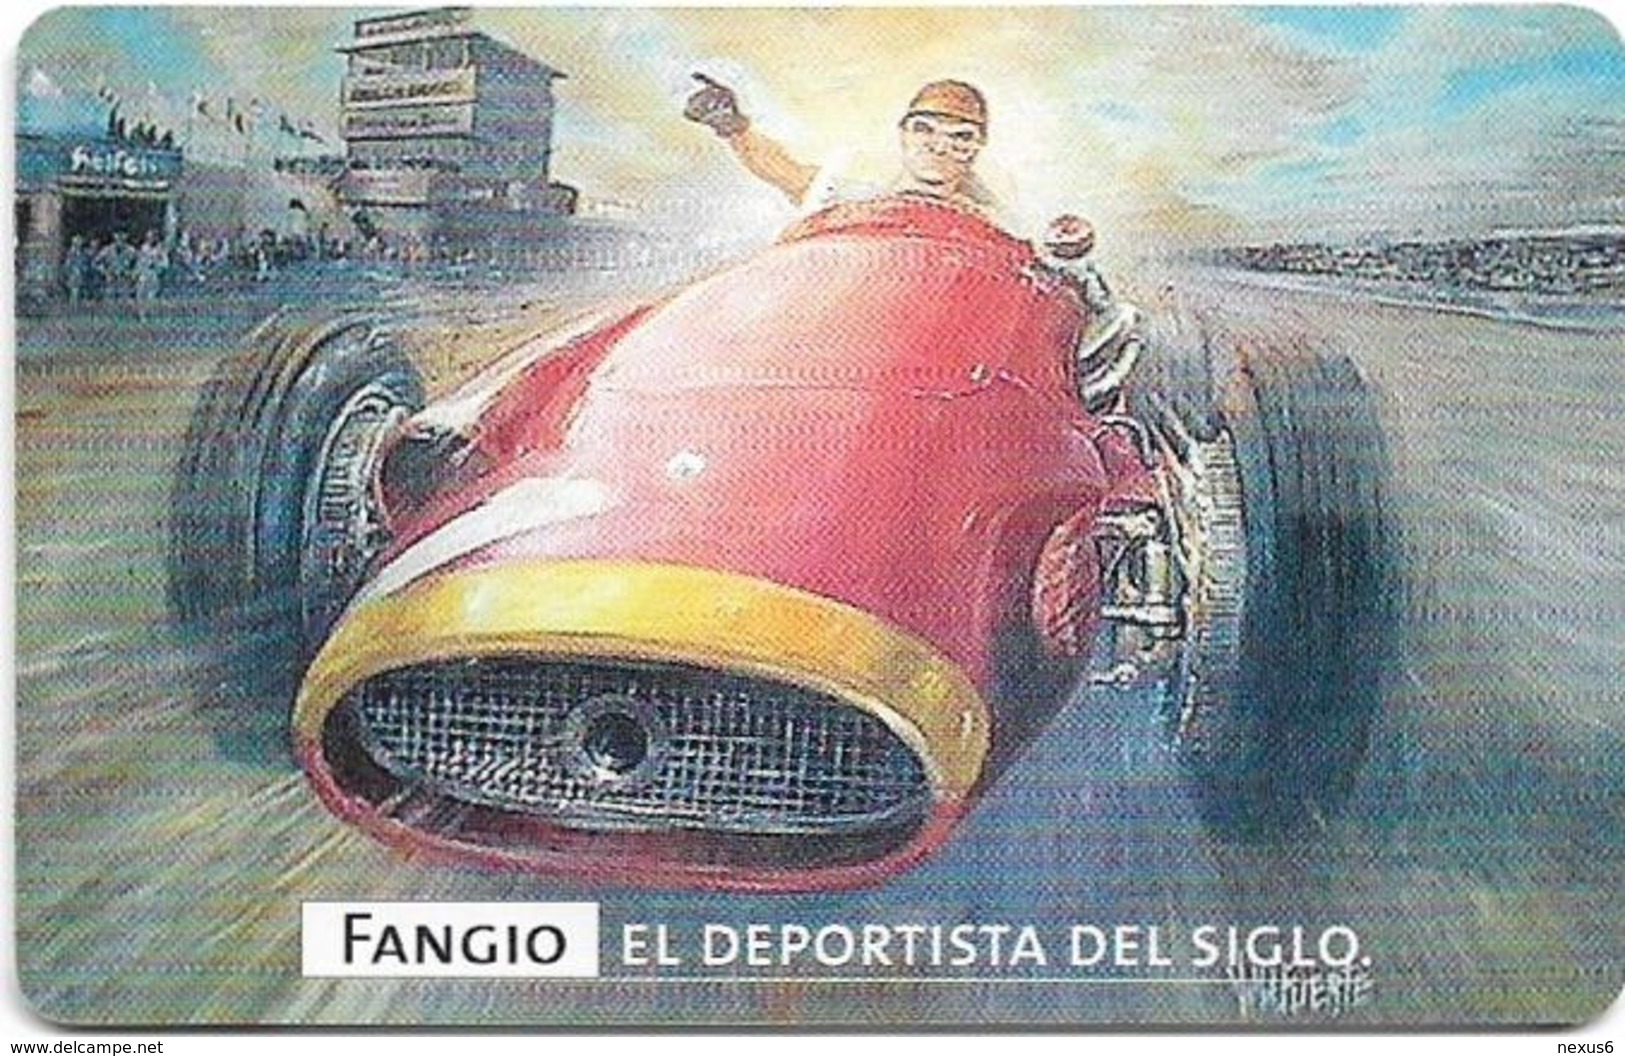 Argentina - Telefónica - Juan Manuel Fangio Cars 8/8, 07.1999 - 50.000ex, Used - Argentina